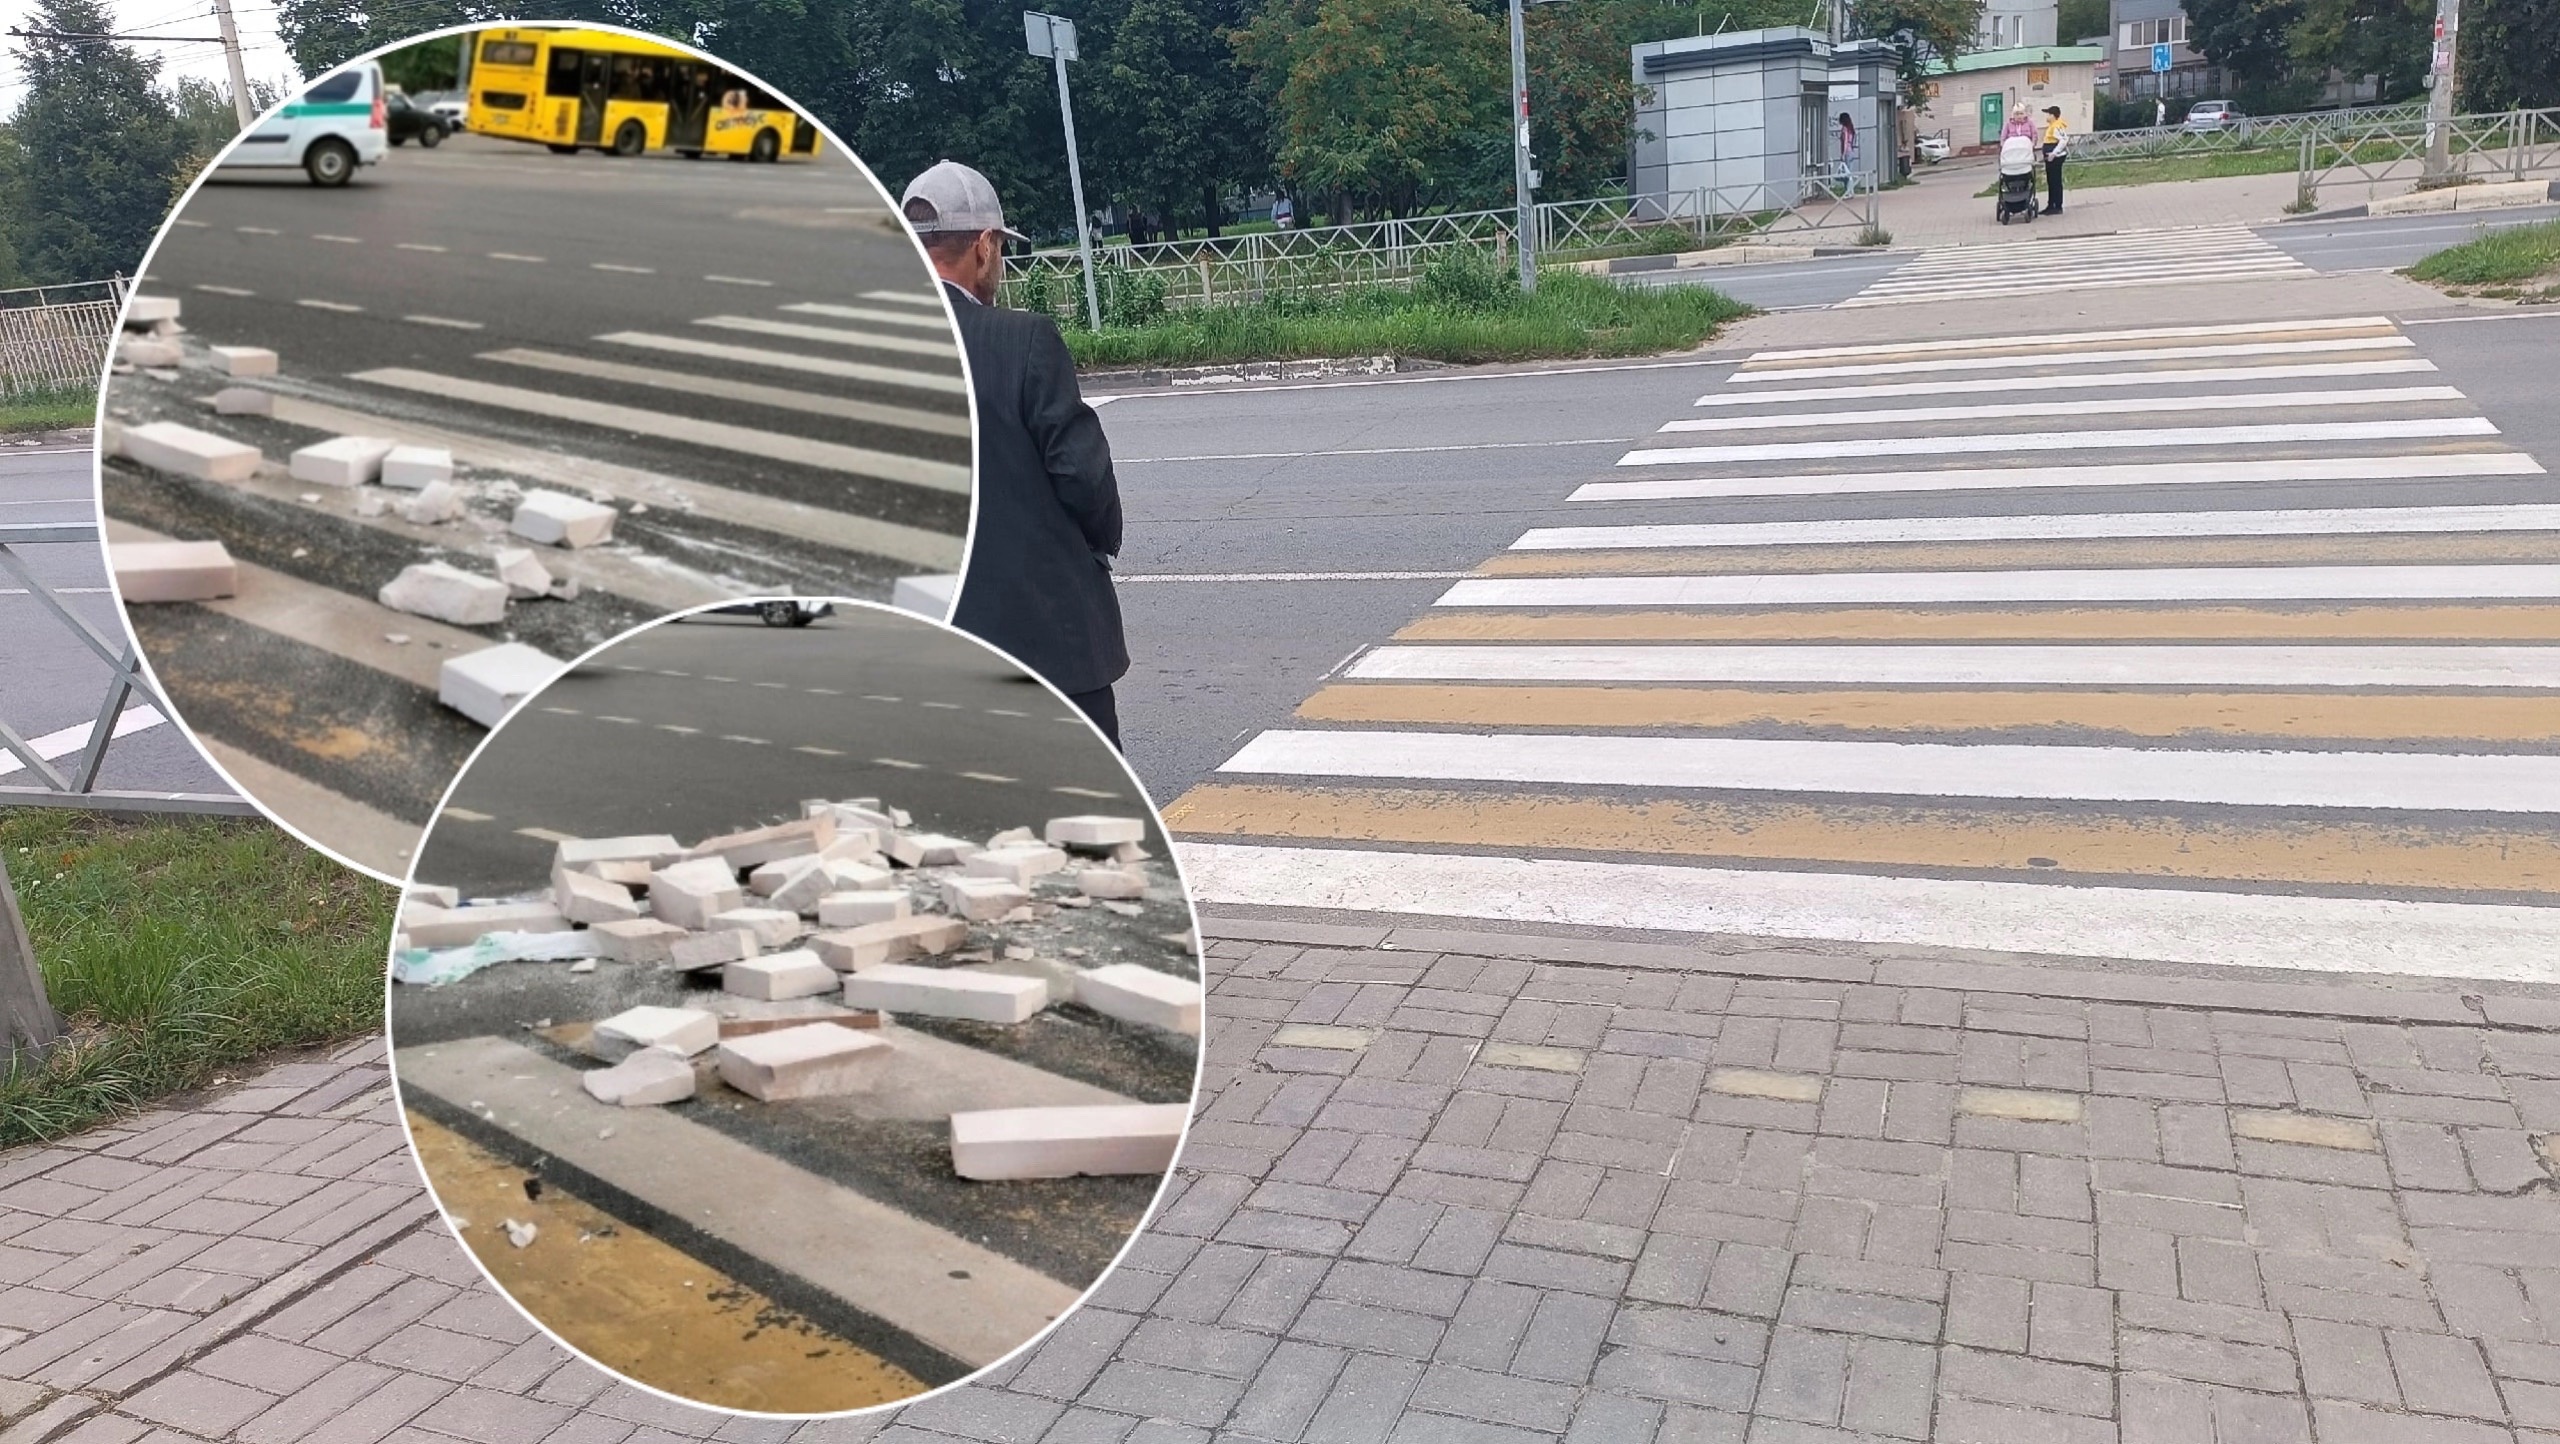 В Ярославле шаланда вывалила груду стройматериала прямо на дорогу и пешеходный переход 